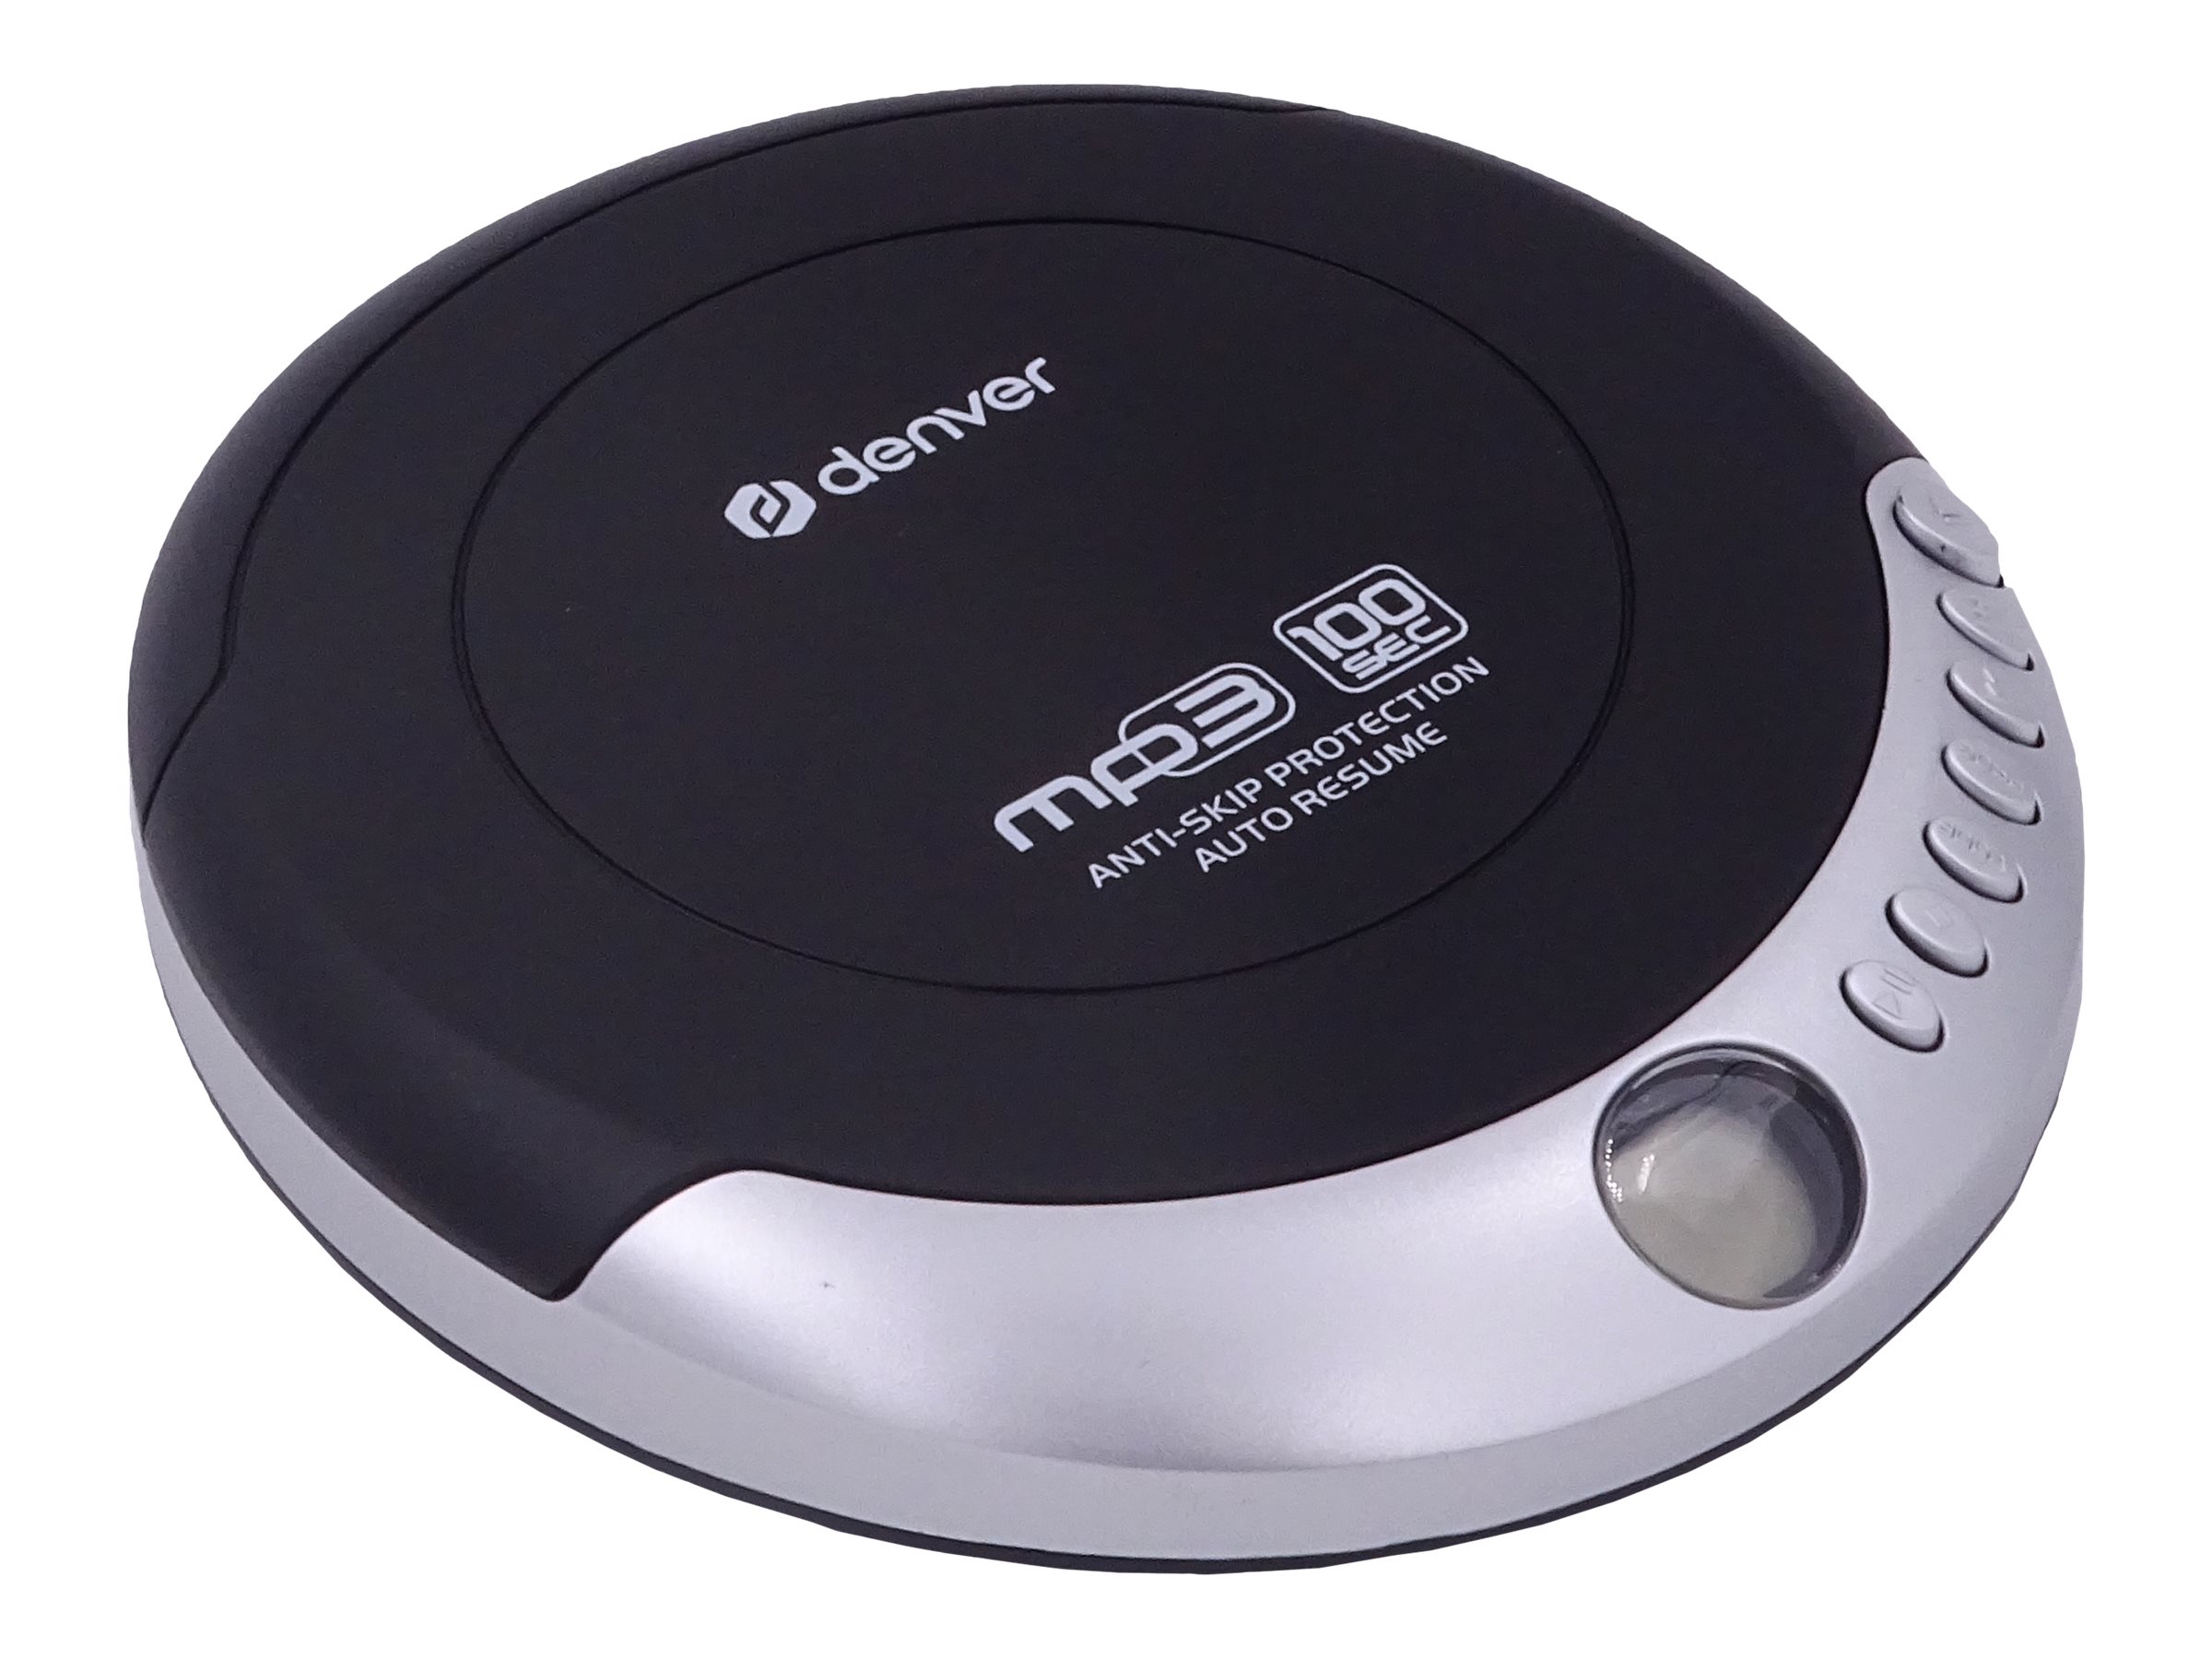 Inter Sales DENVER DMP-391 - CD-Player